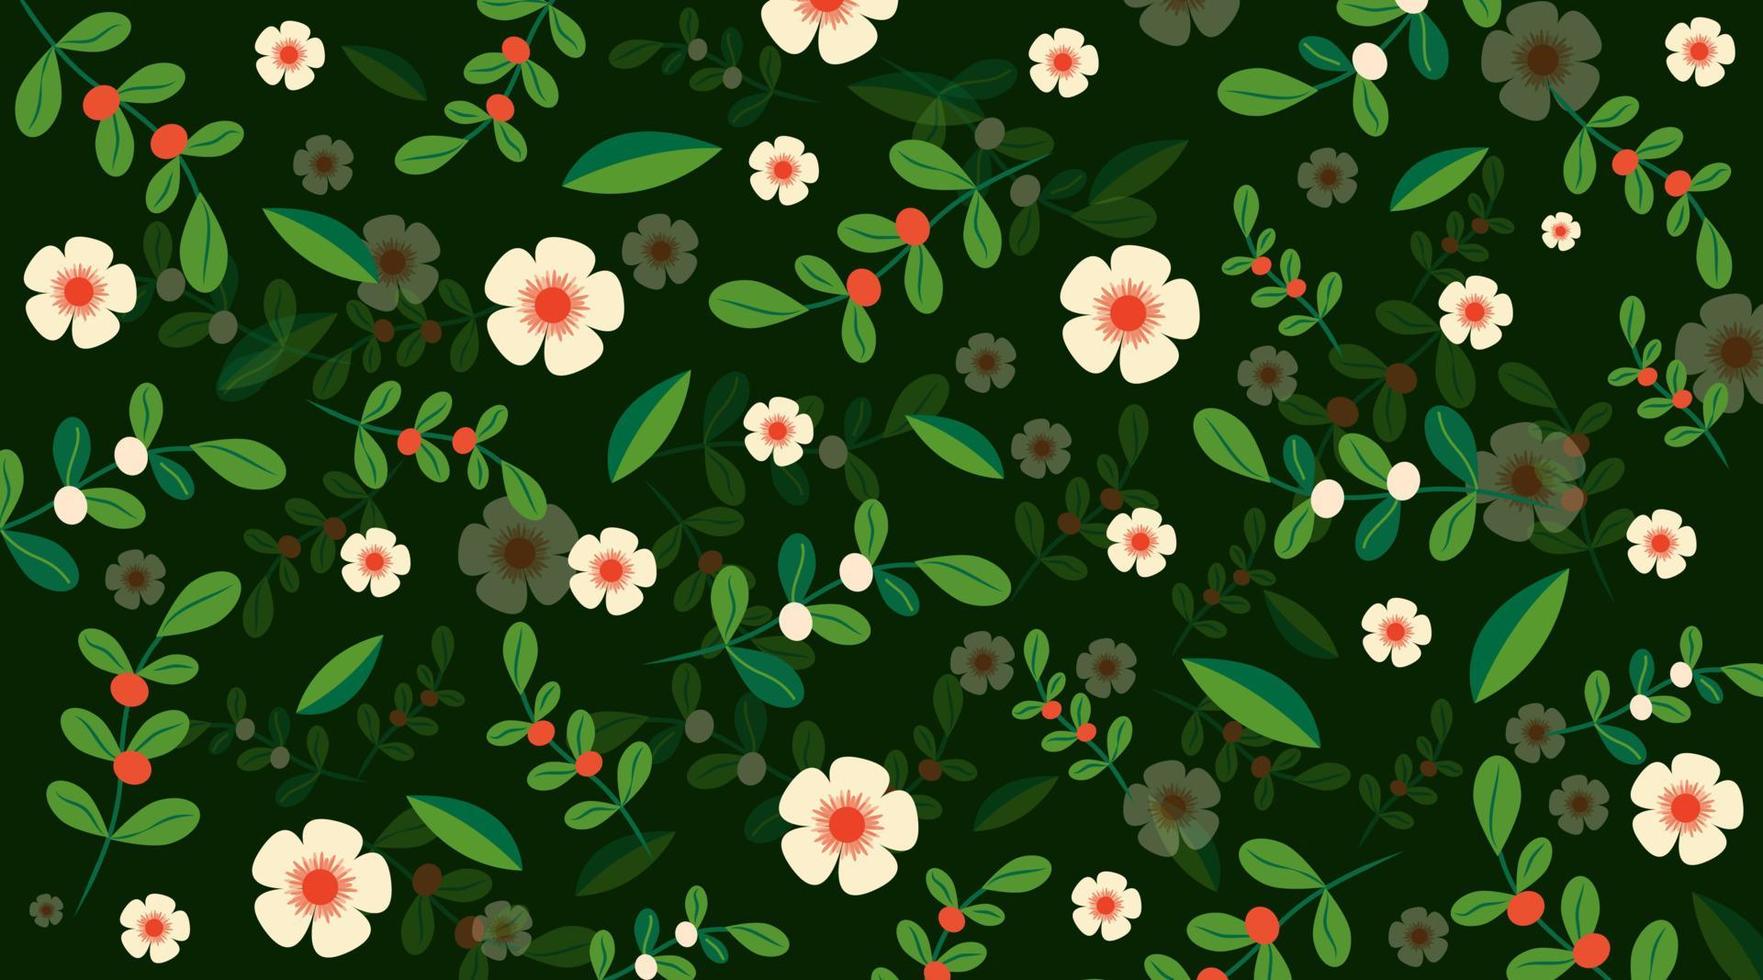 patrones florales creativos fondo natural verde patrón de ilustración de vector libre